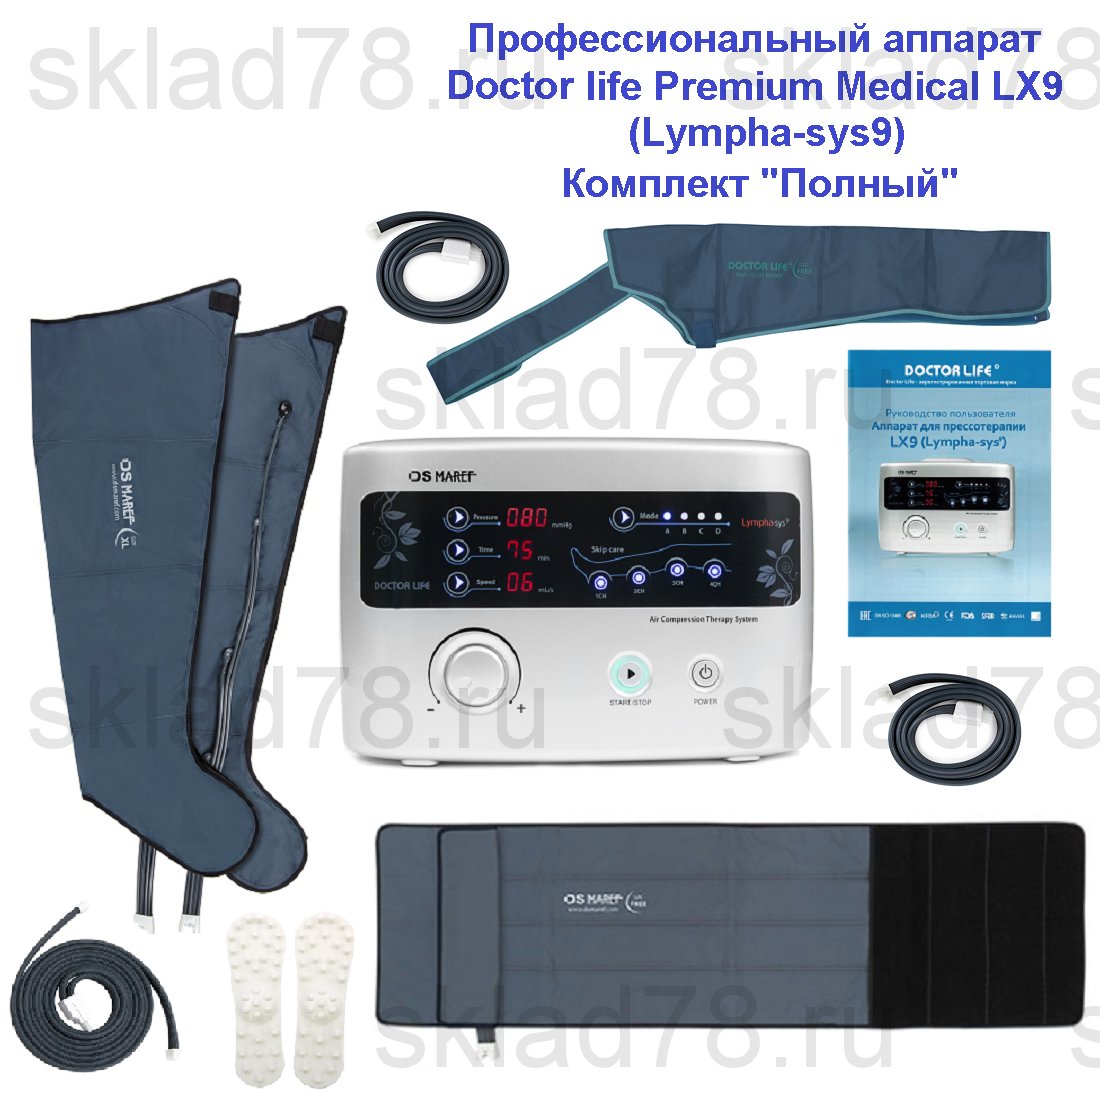 Doctor Life Premium Medical LX9 (Lympha-sys9) «Полный» комплект